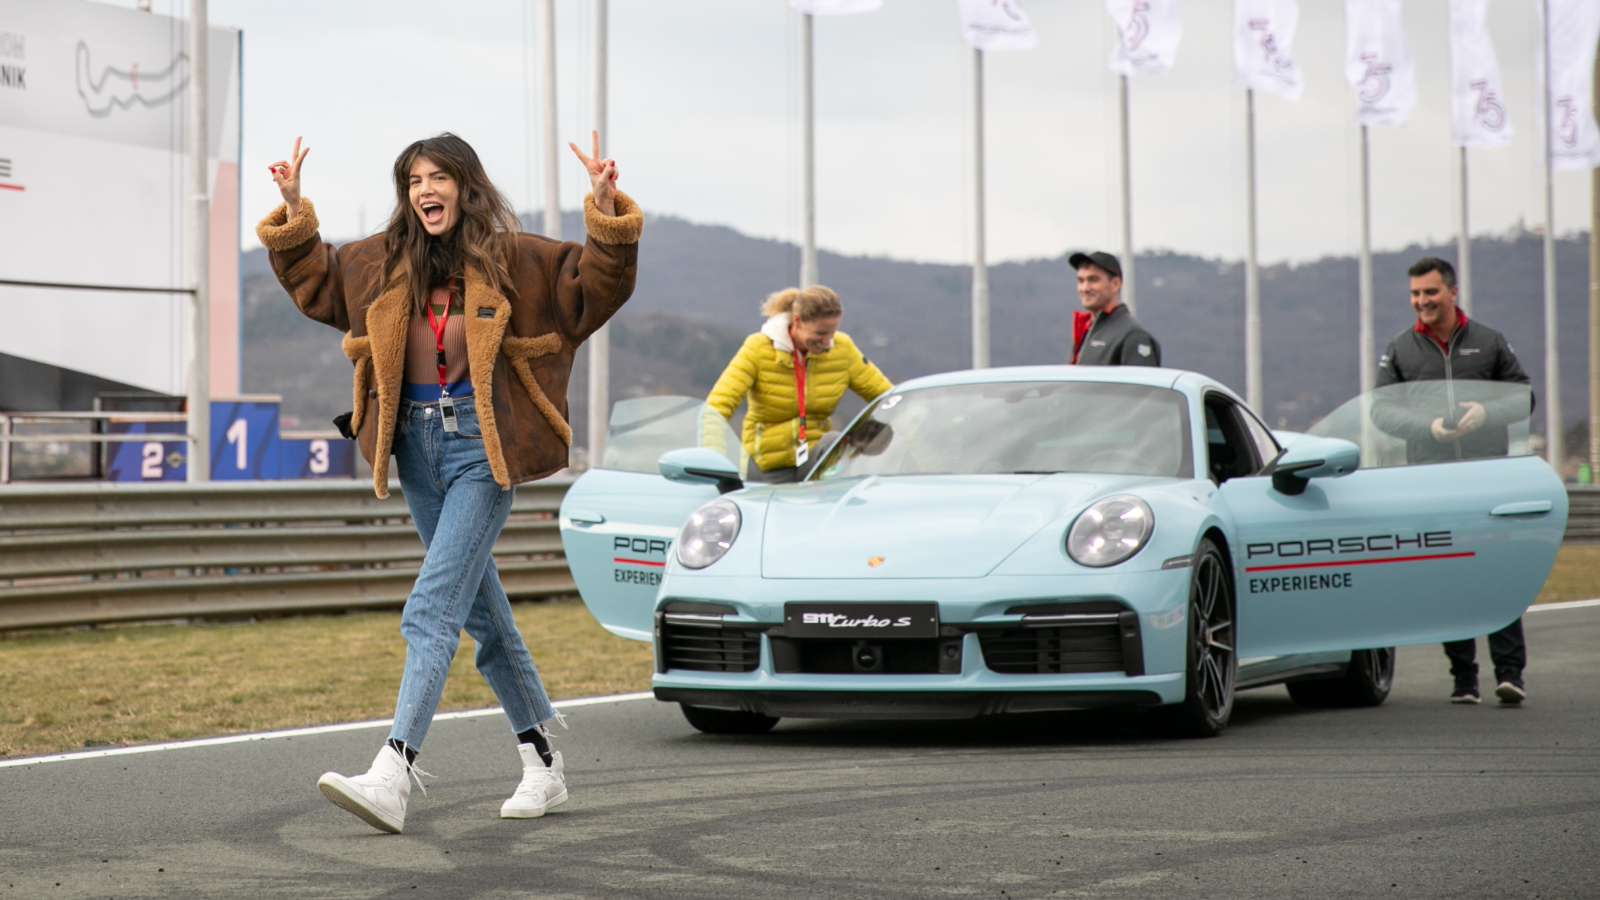 Porsche Centar Zagreb već treću godinu za redom ruši stereotipe zajedno sa ženama na trkaćoj stazi